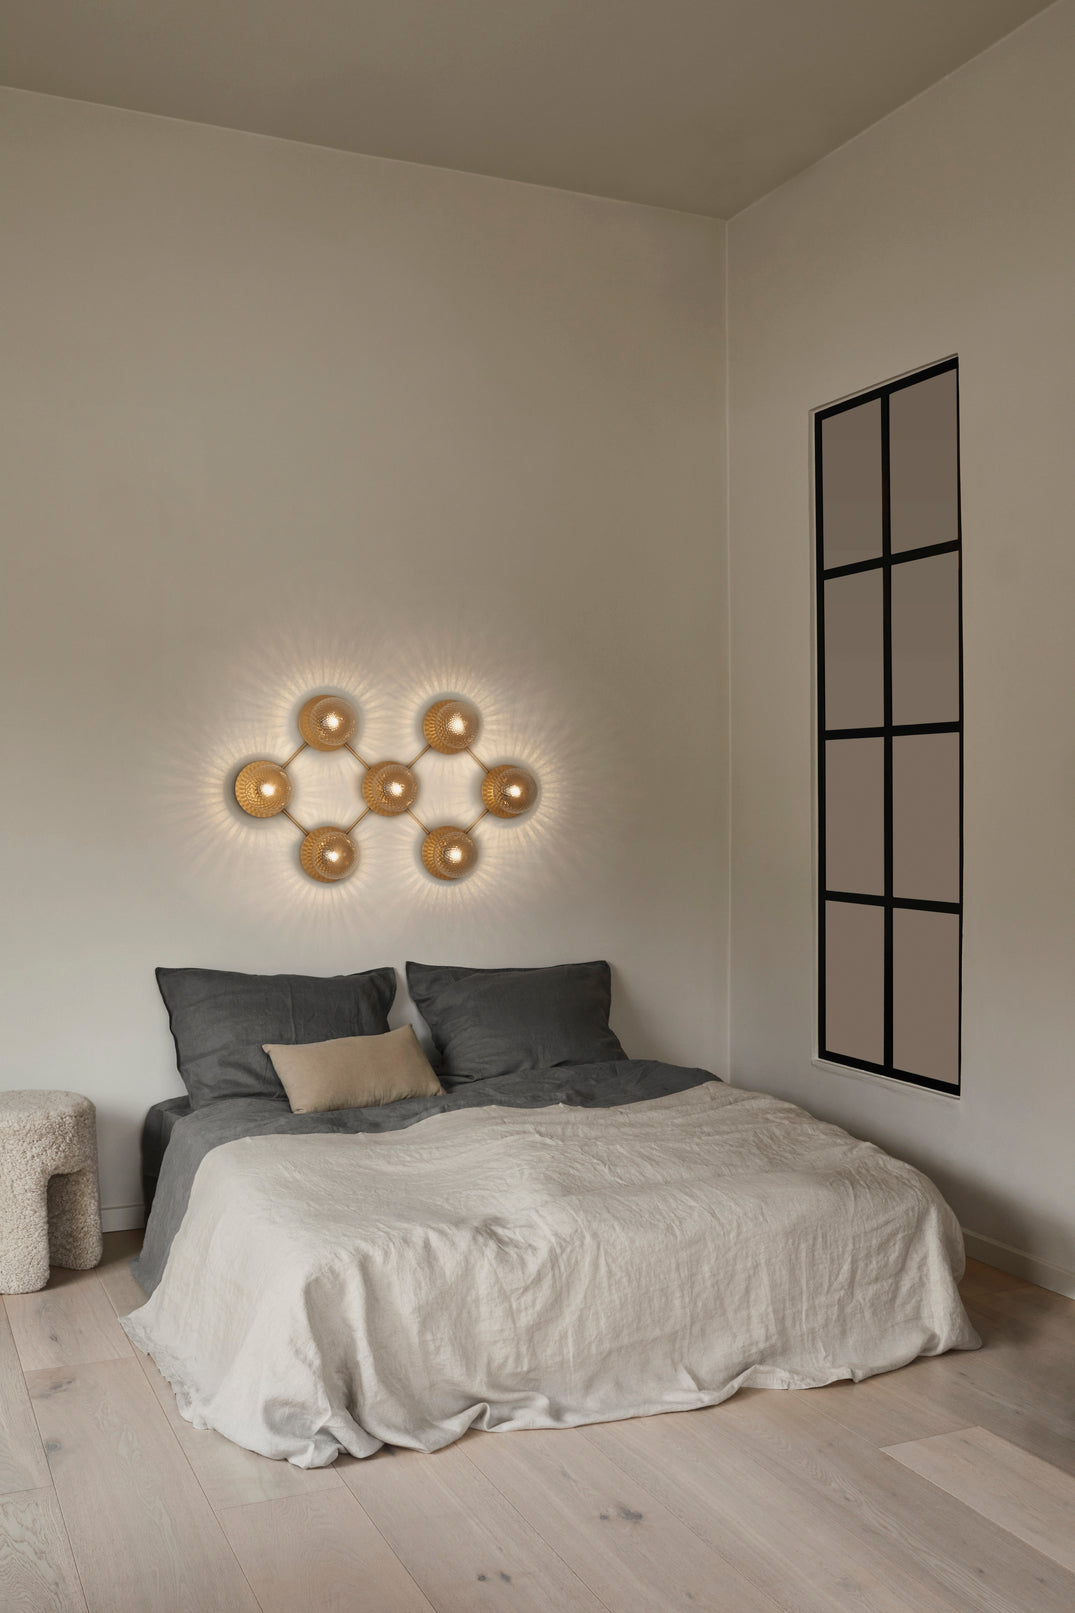 Væglampe med lampeskærme af klart optikglas og gylden fatning og stel, hængende over seng i soveværelse